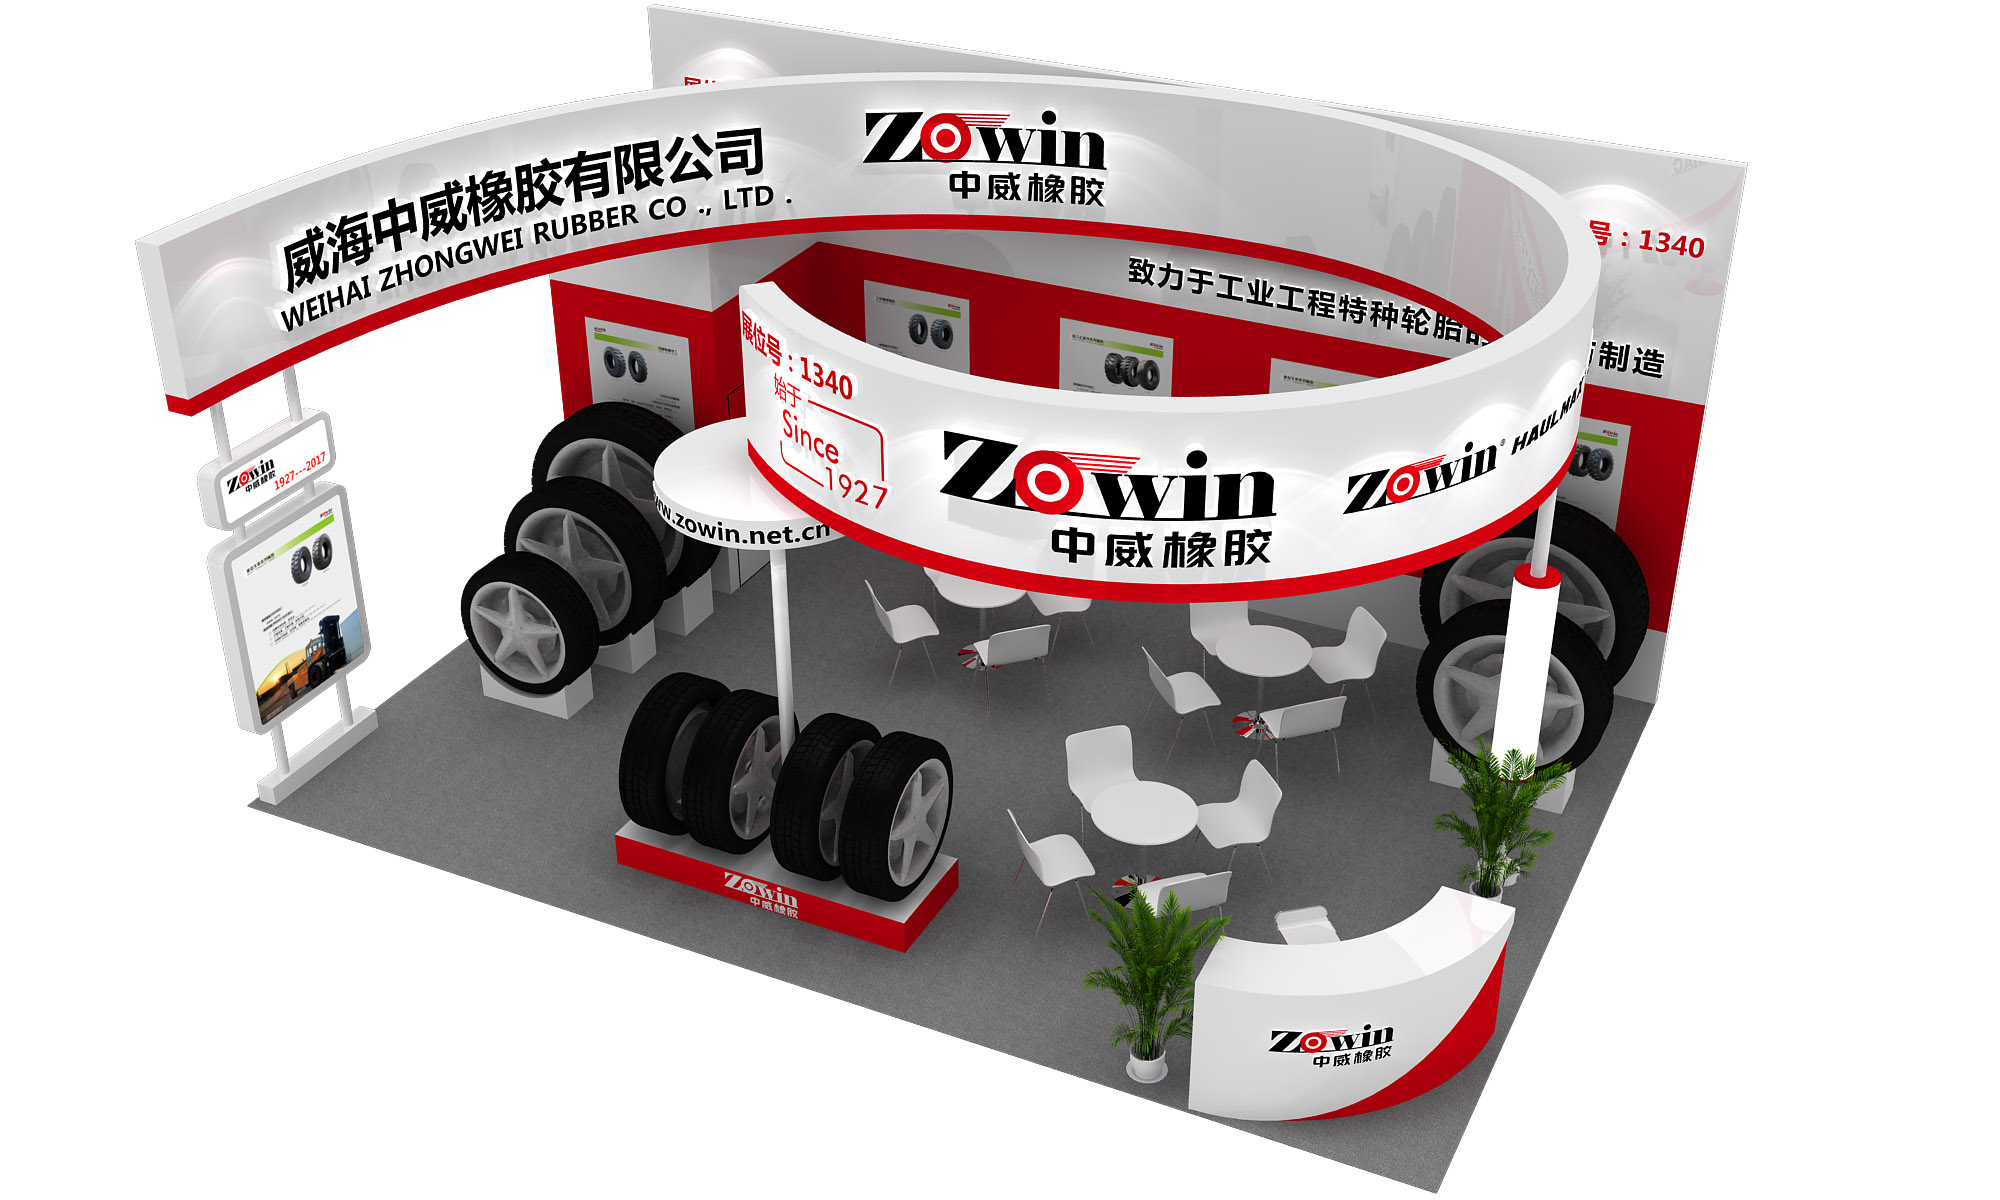 威海中威橡胶有限公司与您相约第十五届中国国际轮胎博览会